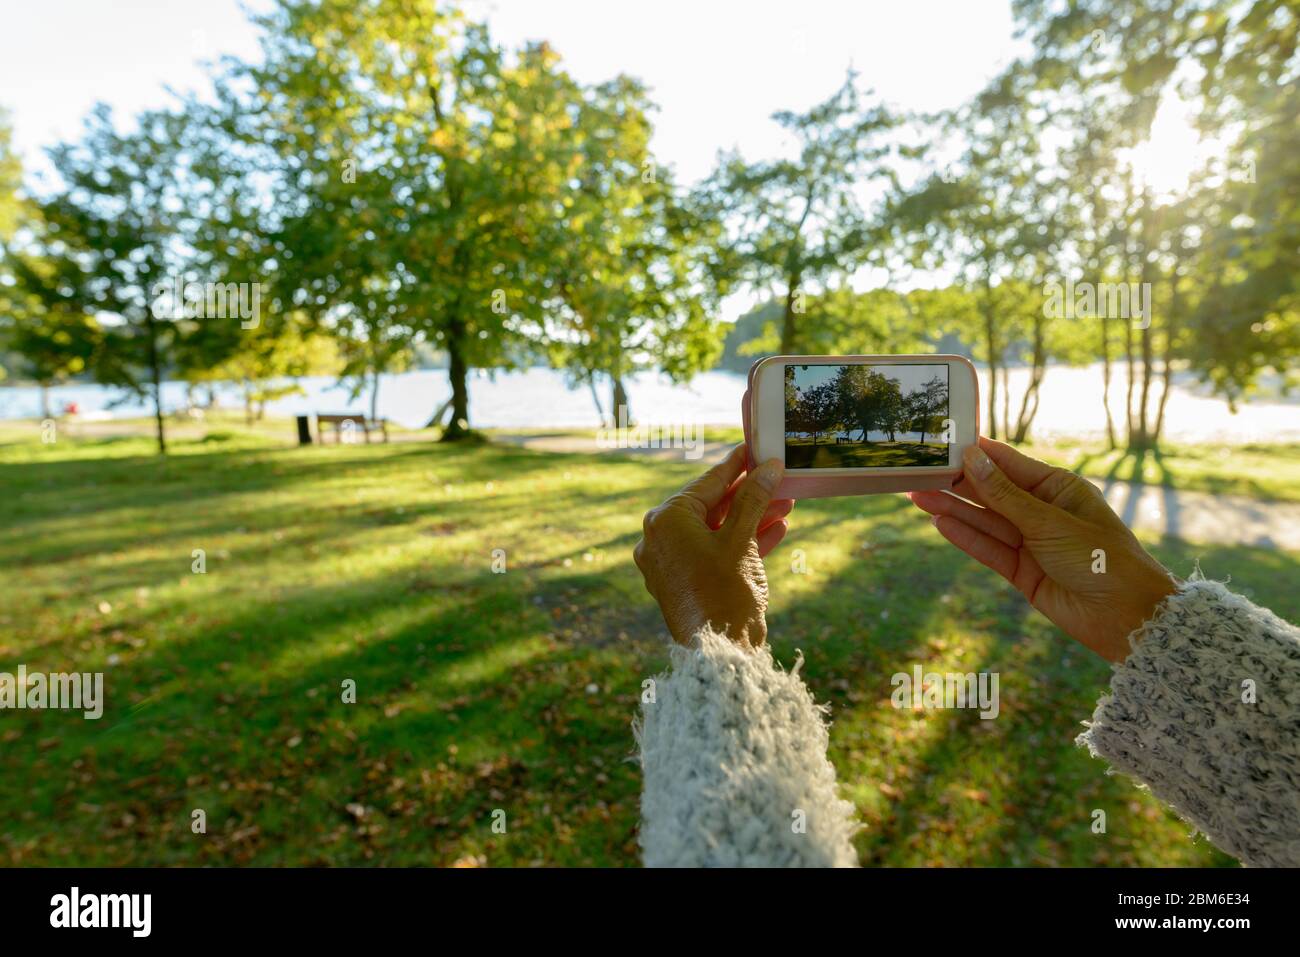 Hände der reifen Frau, die mit dem Telefon im Park fotografiert Stockfoto